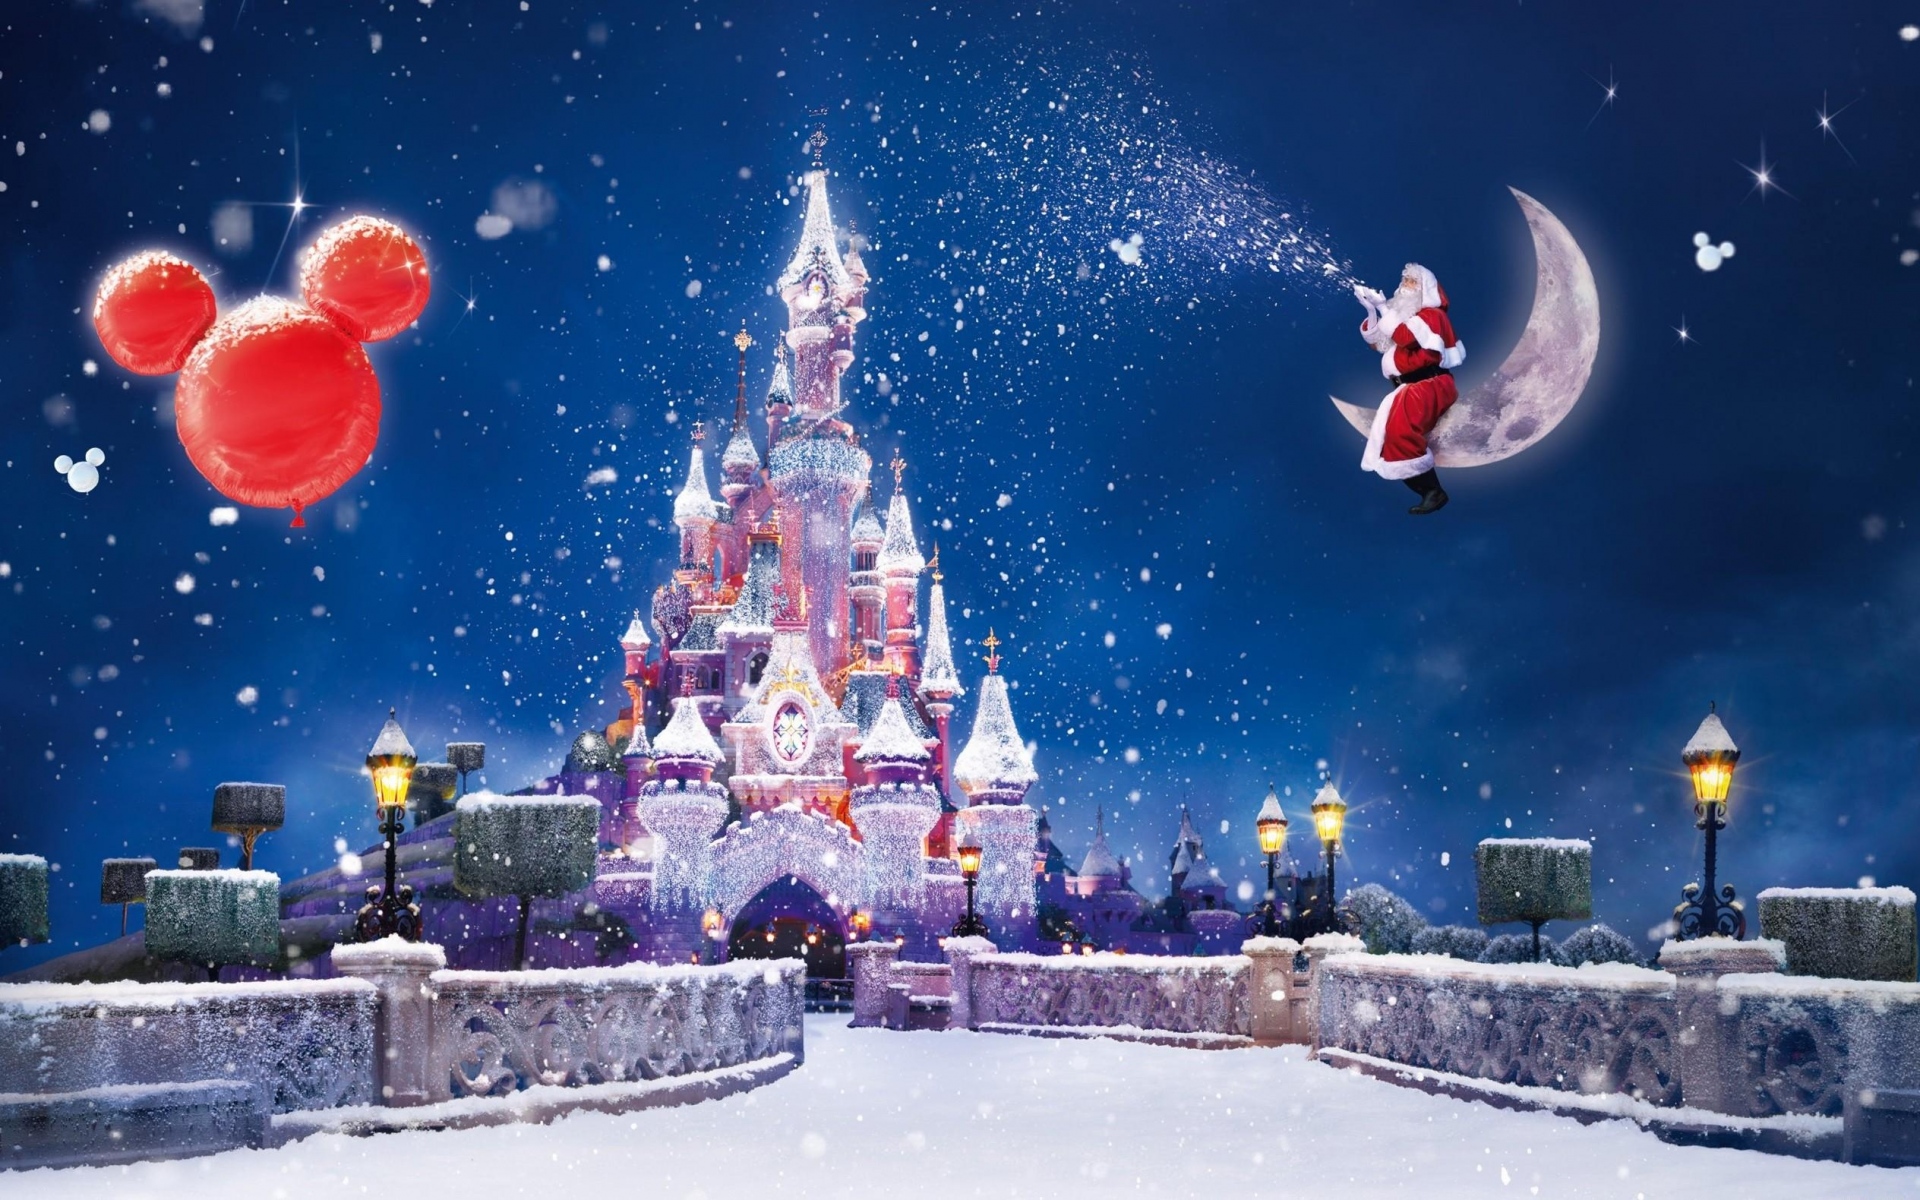 Картинки Санта - Клауса, магия, луна, снег, замок, воздушные шары, праздник, Рождество фото и обои на рабочий стол